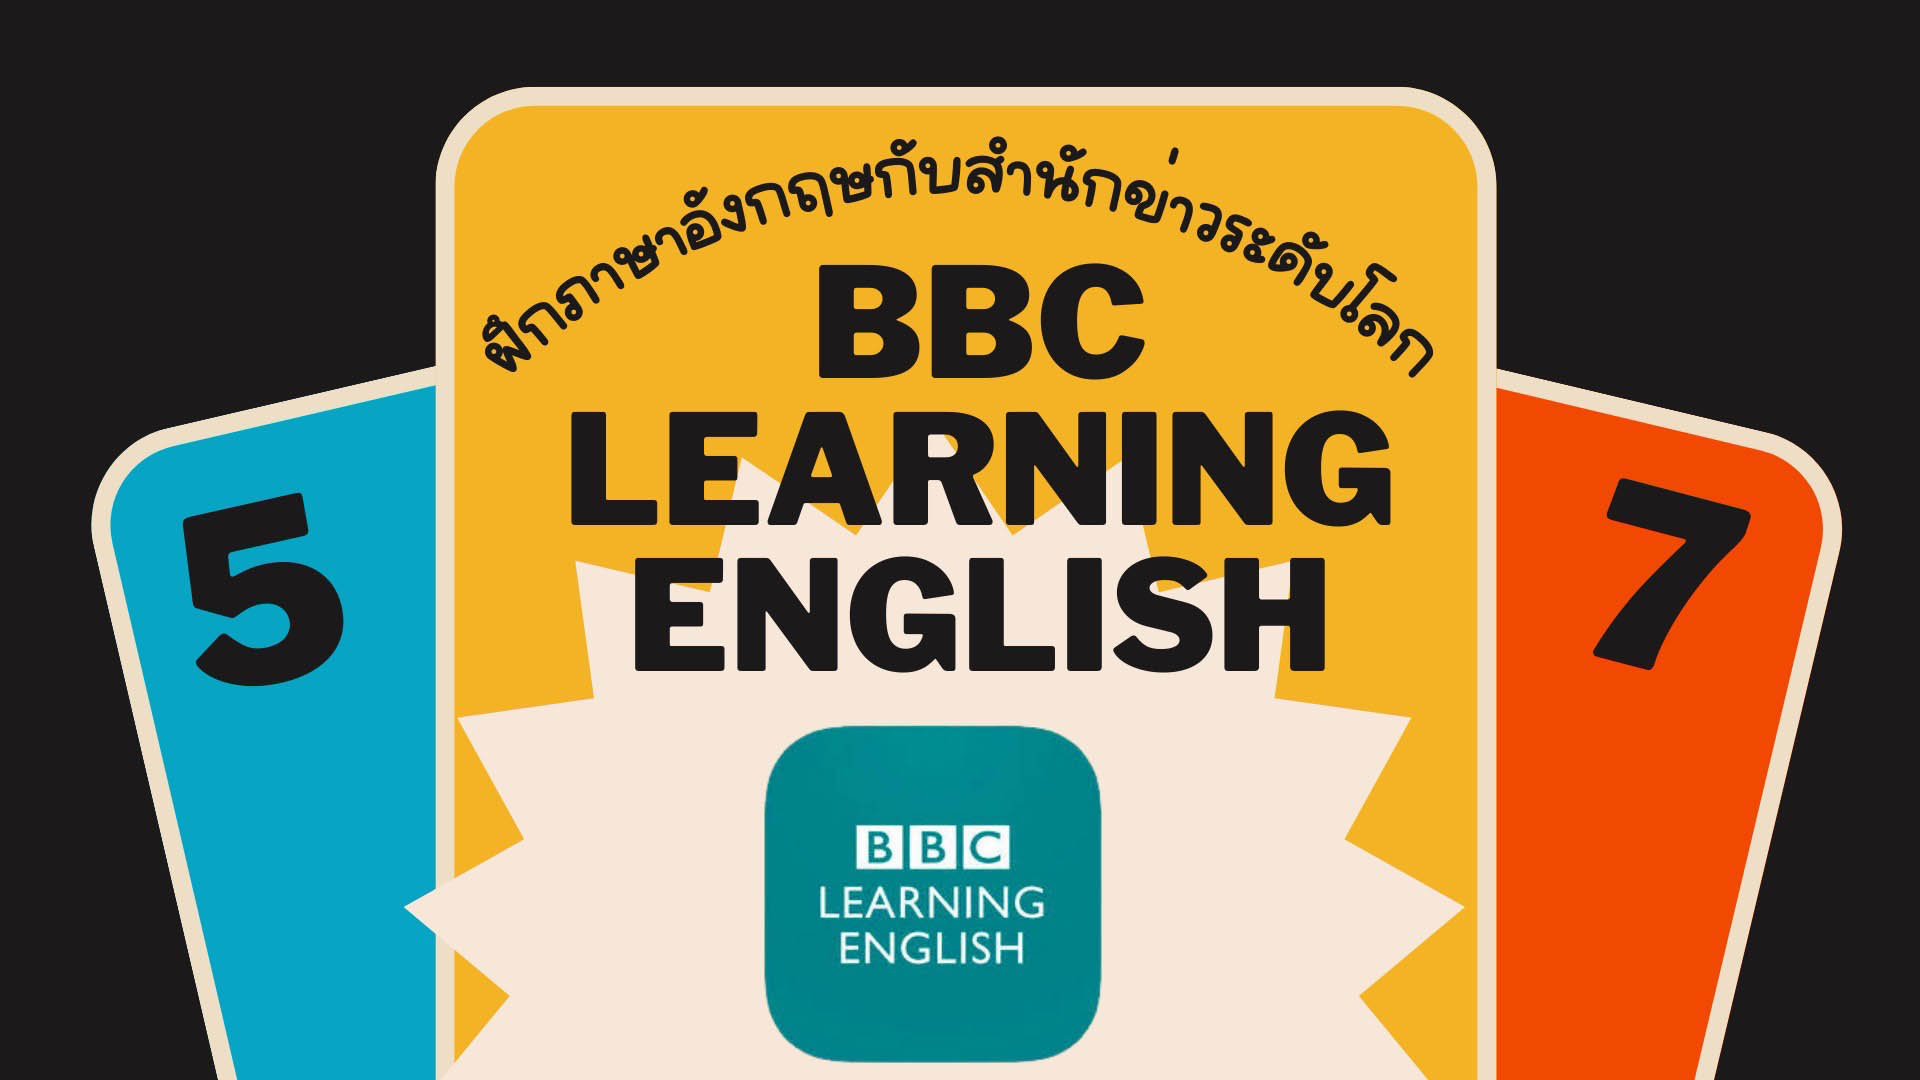 แอป BBC Learning English